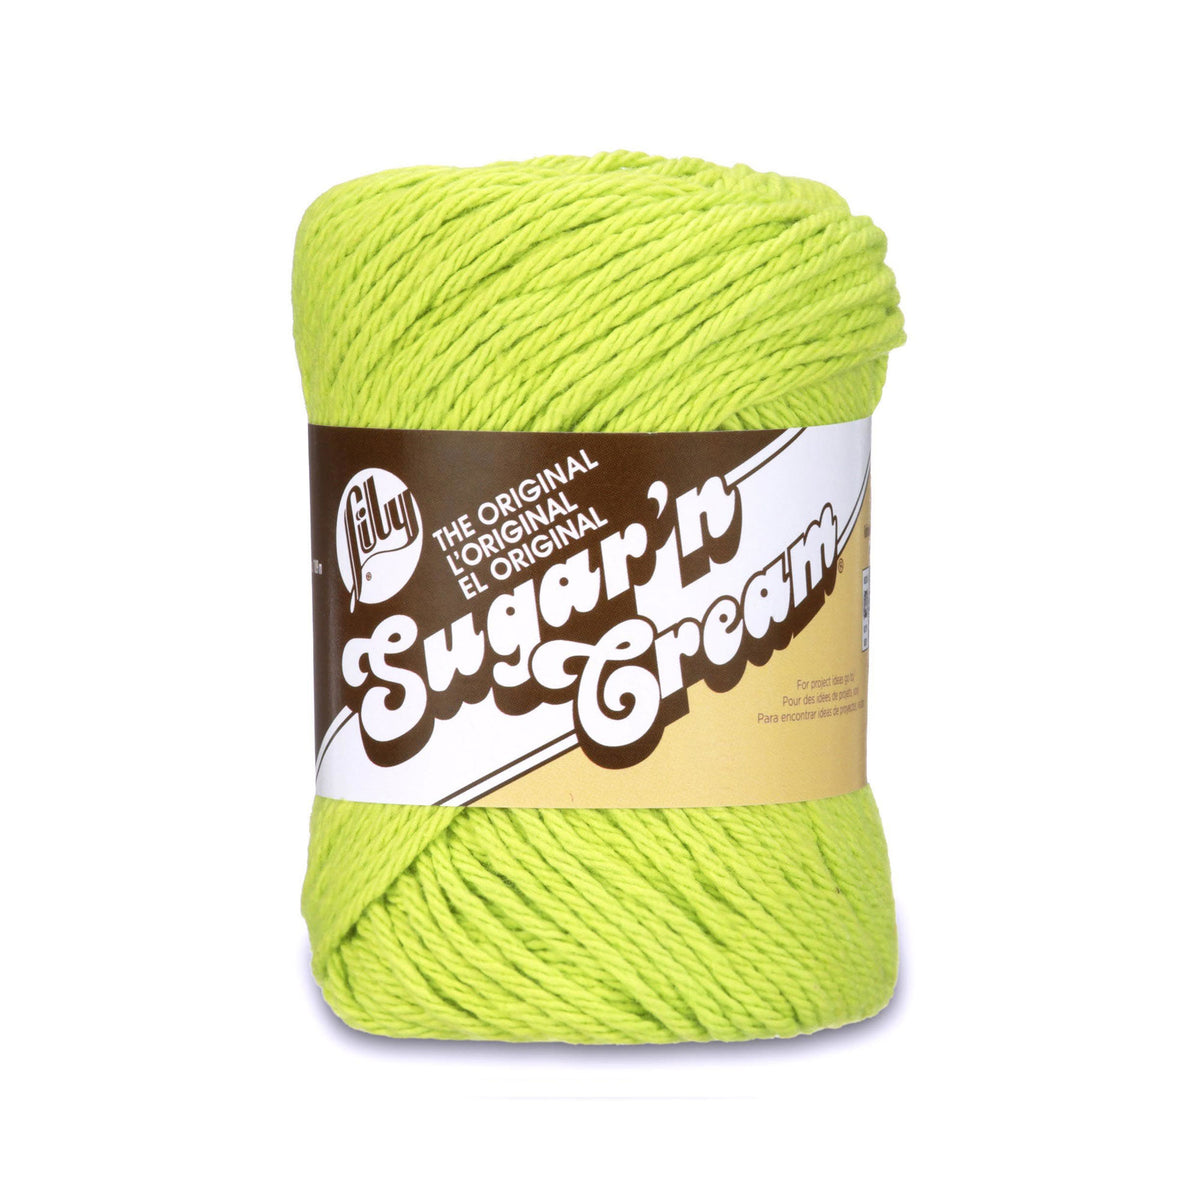 Lily Sugar'n Green Cream Yarn Sage